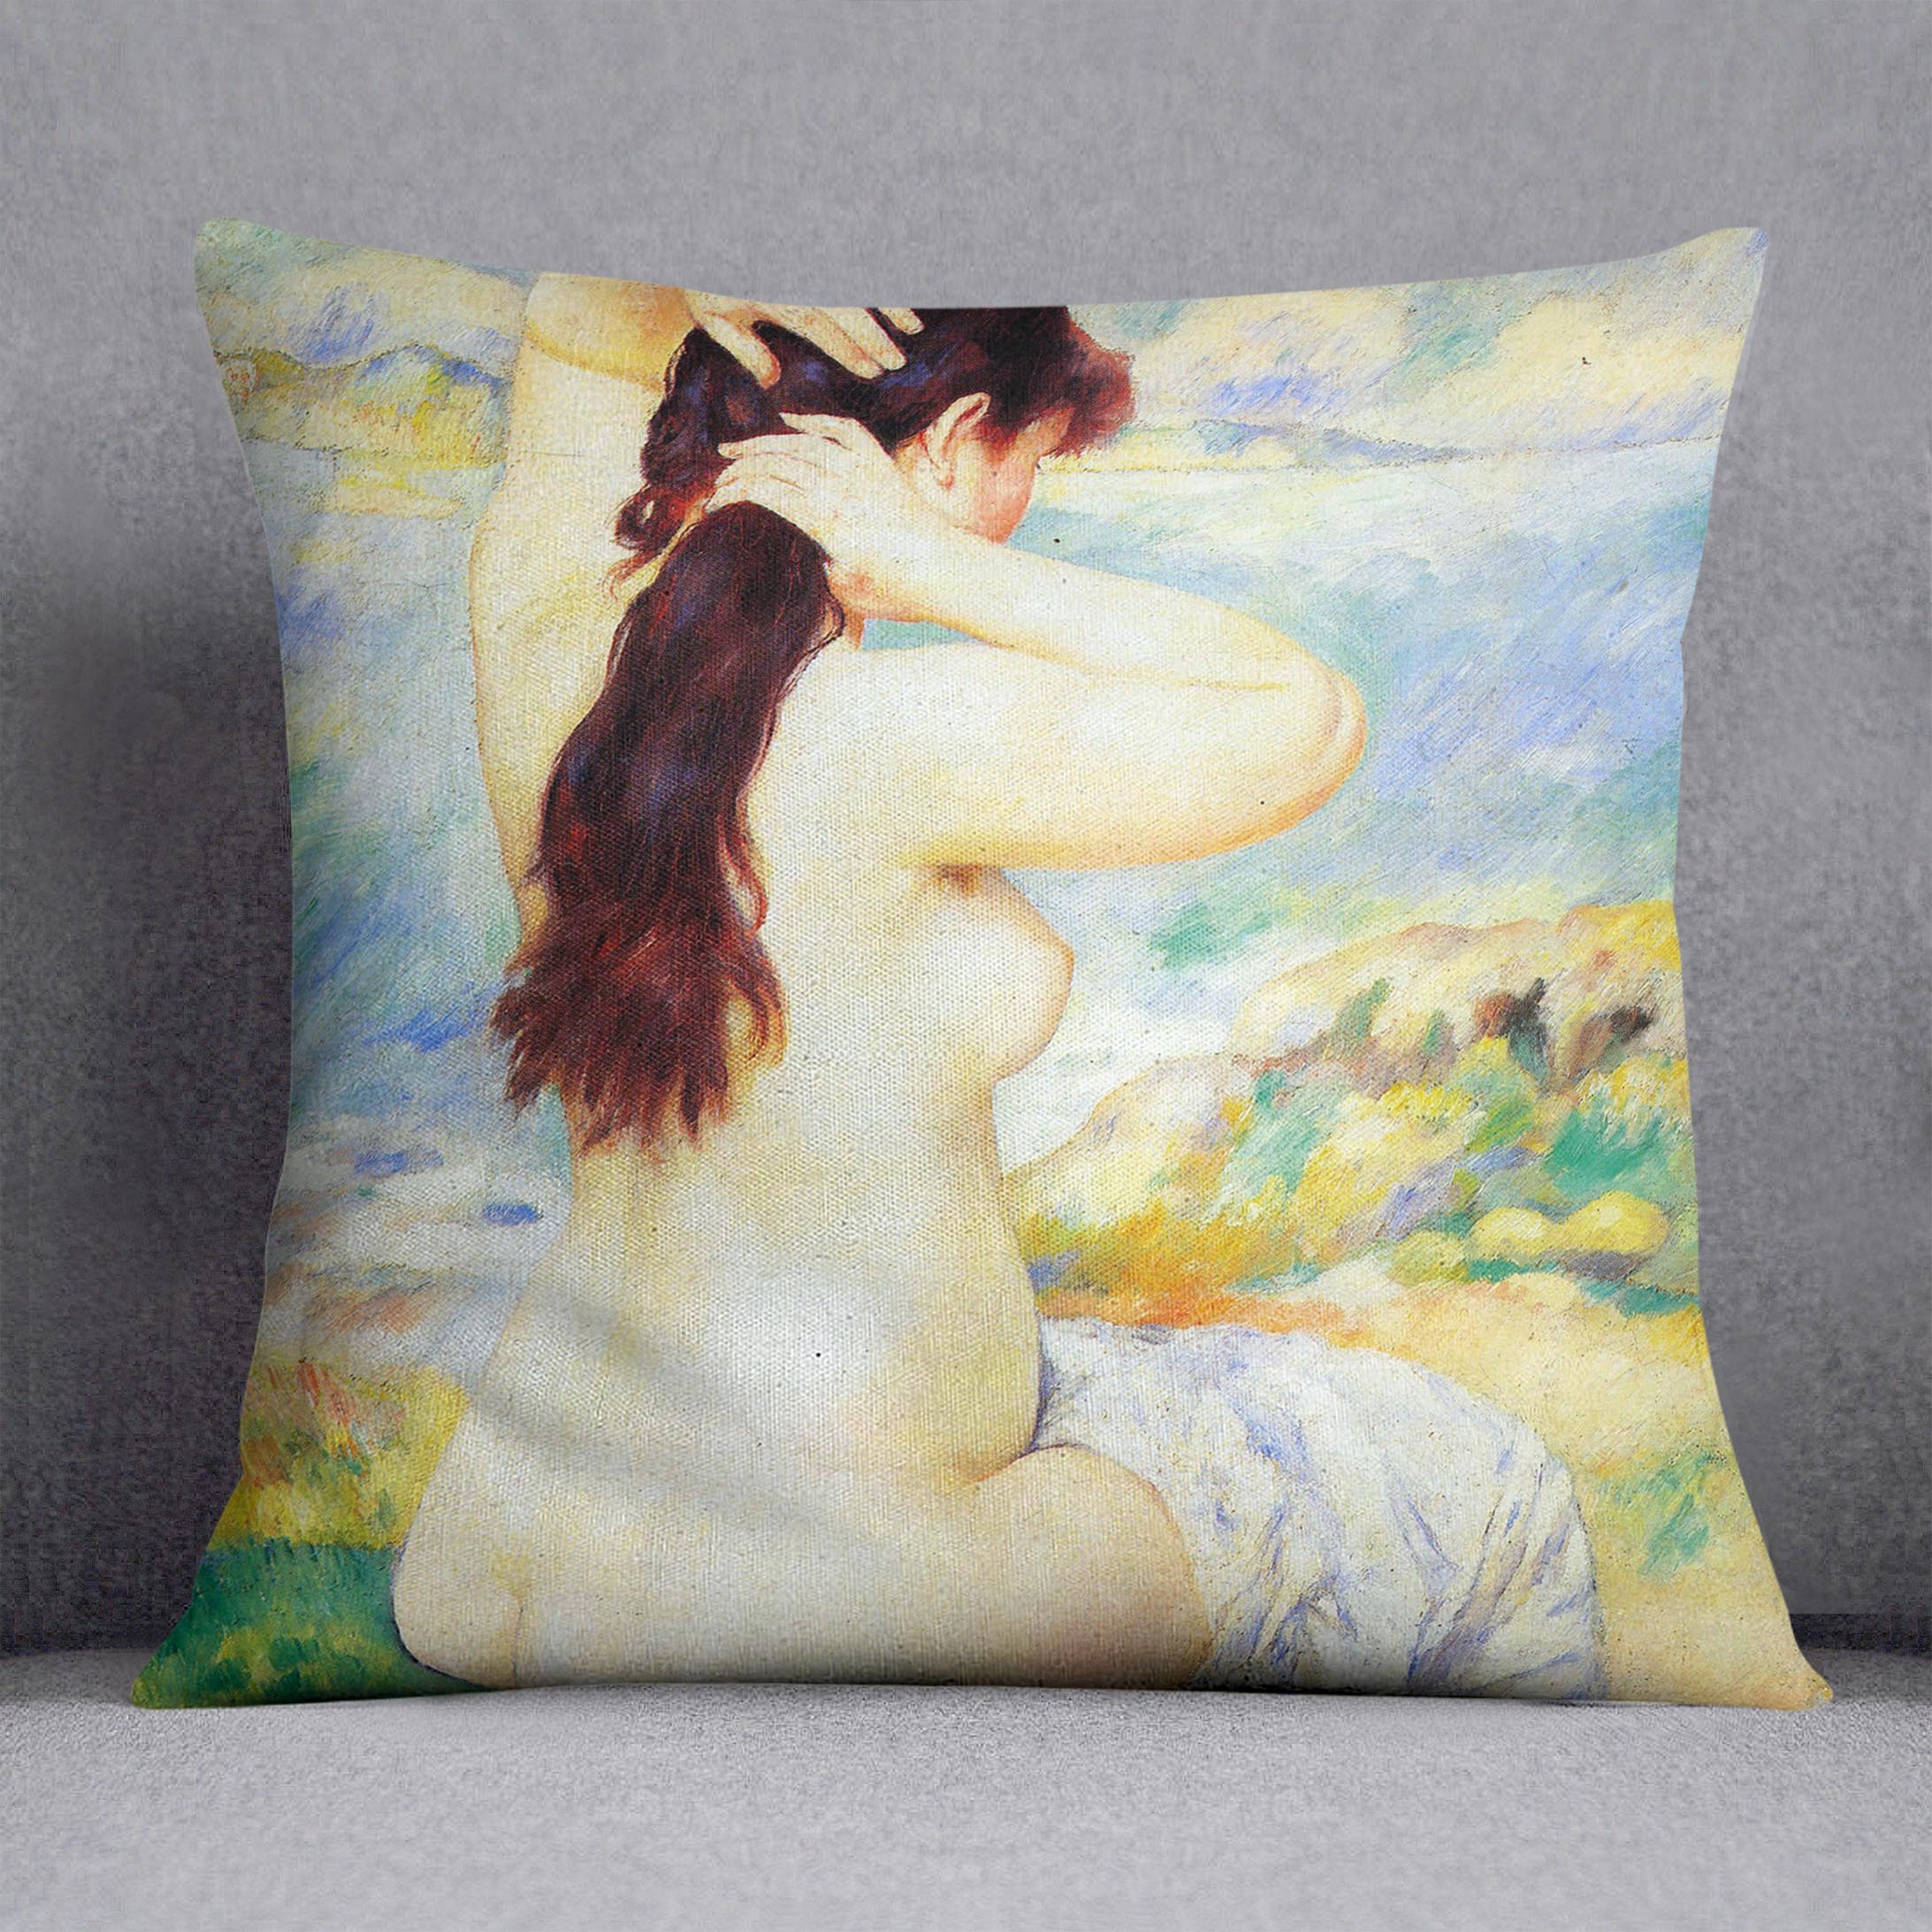 A Bather by Renoir Cushion